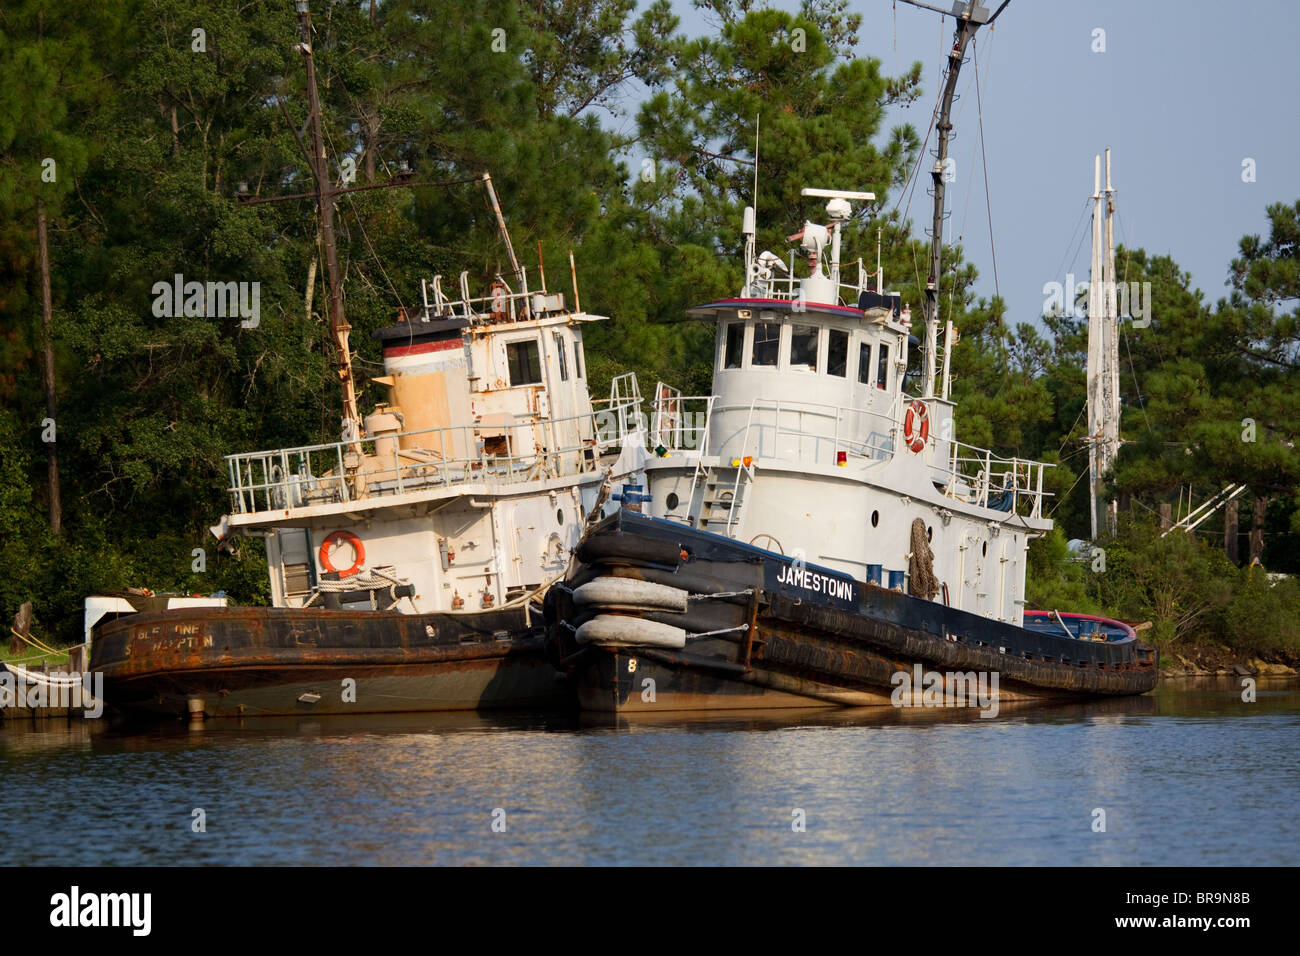 Tug boats in Bayou La Batre, Alabama, in port Stock Photo